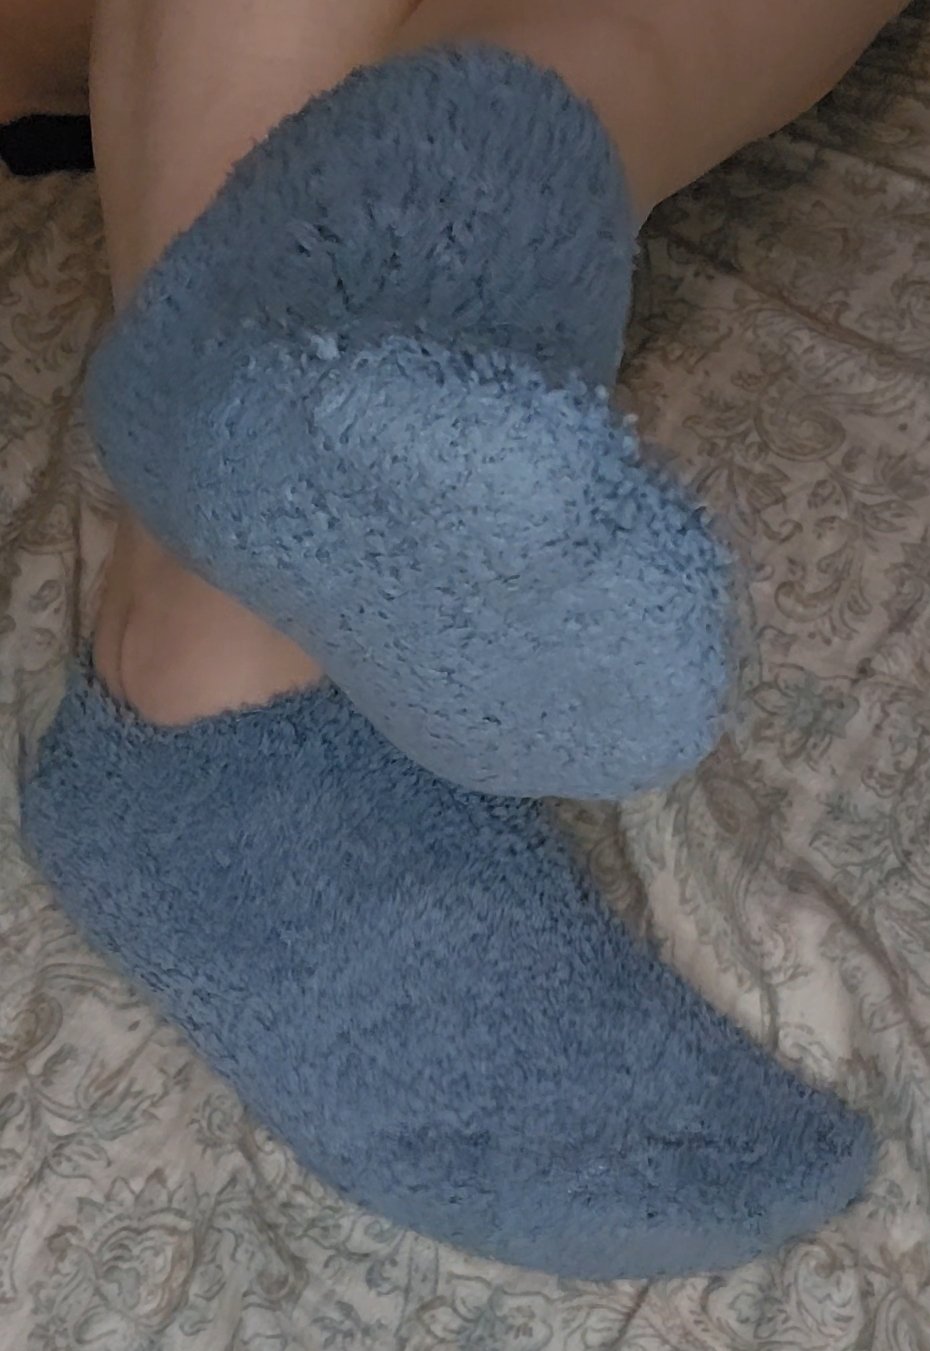 Navy blue fuzzy socks